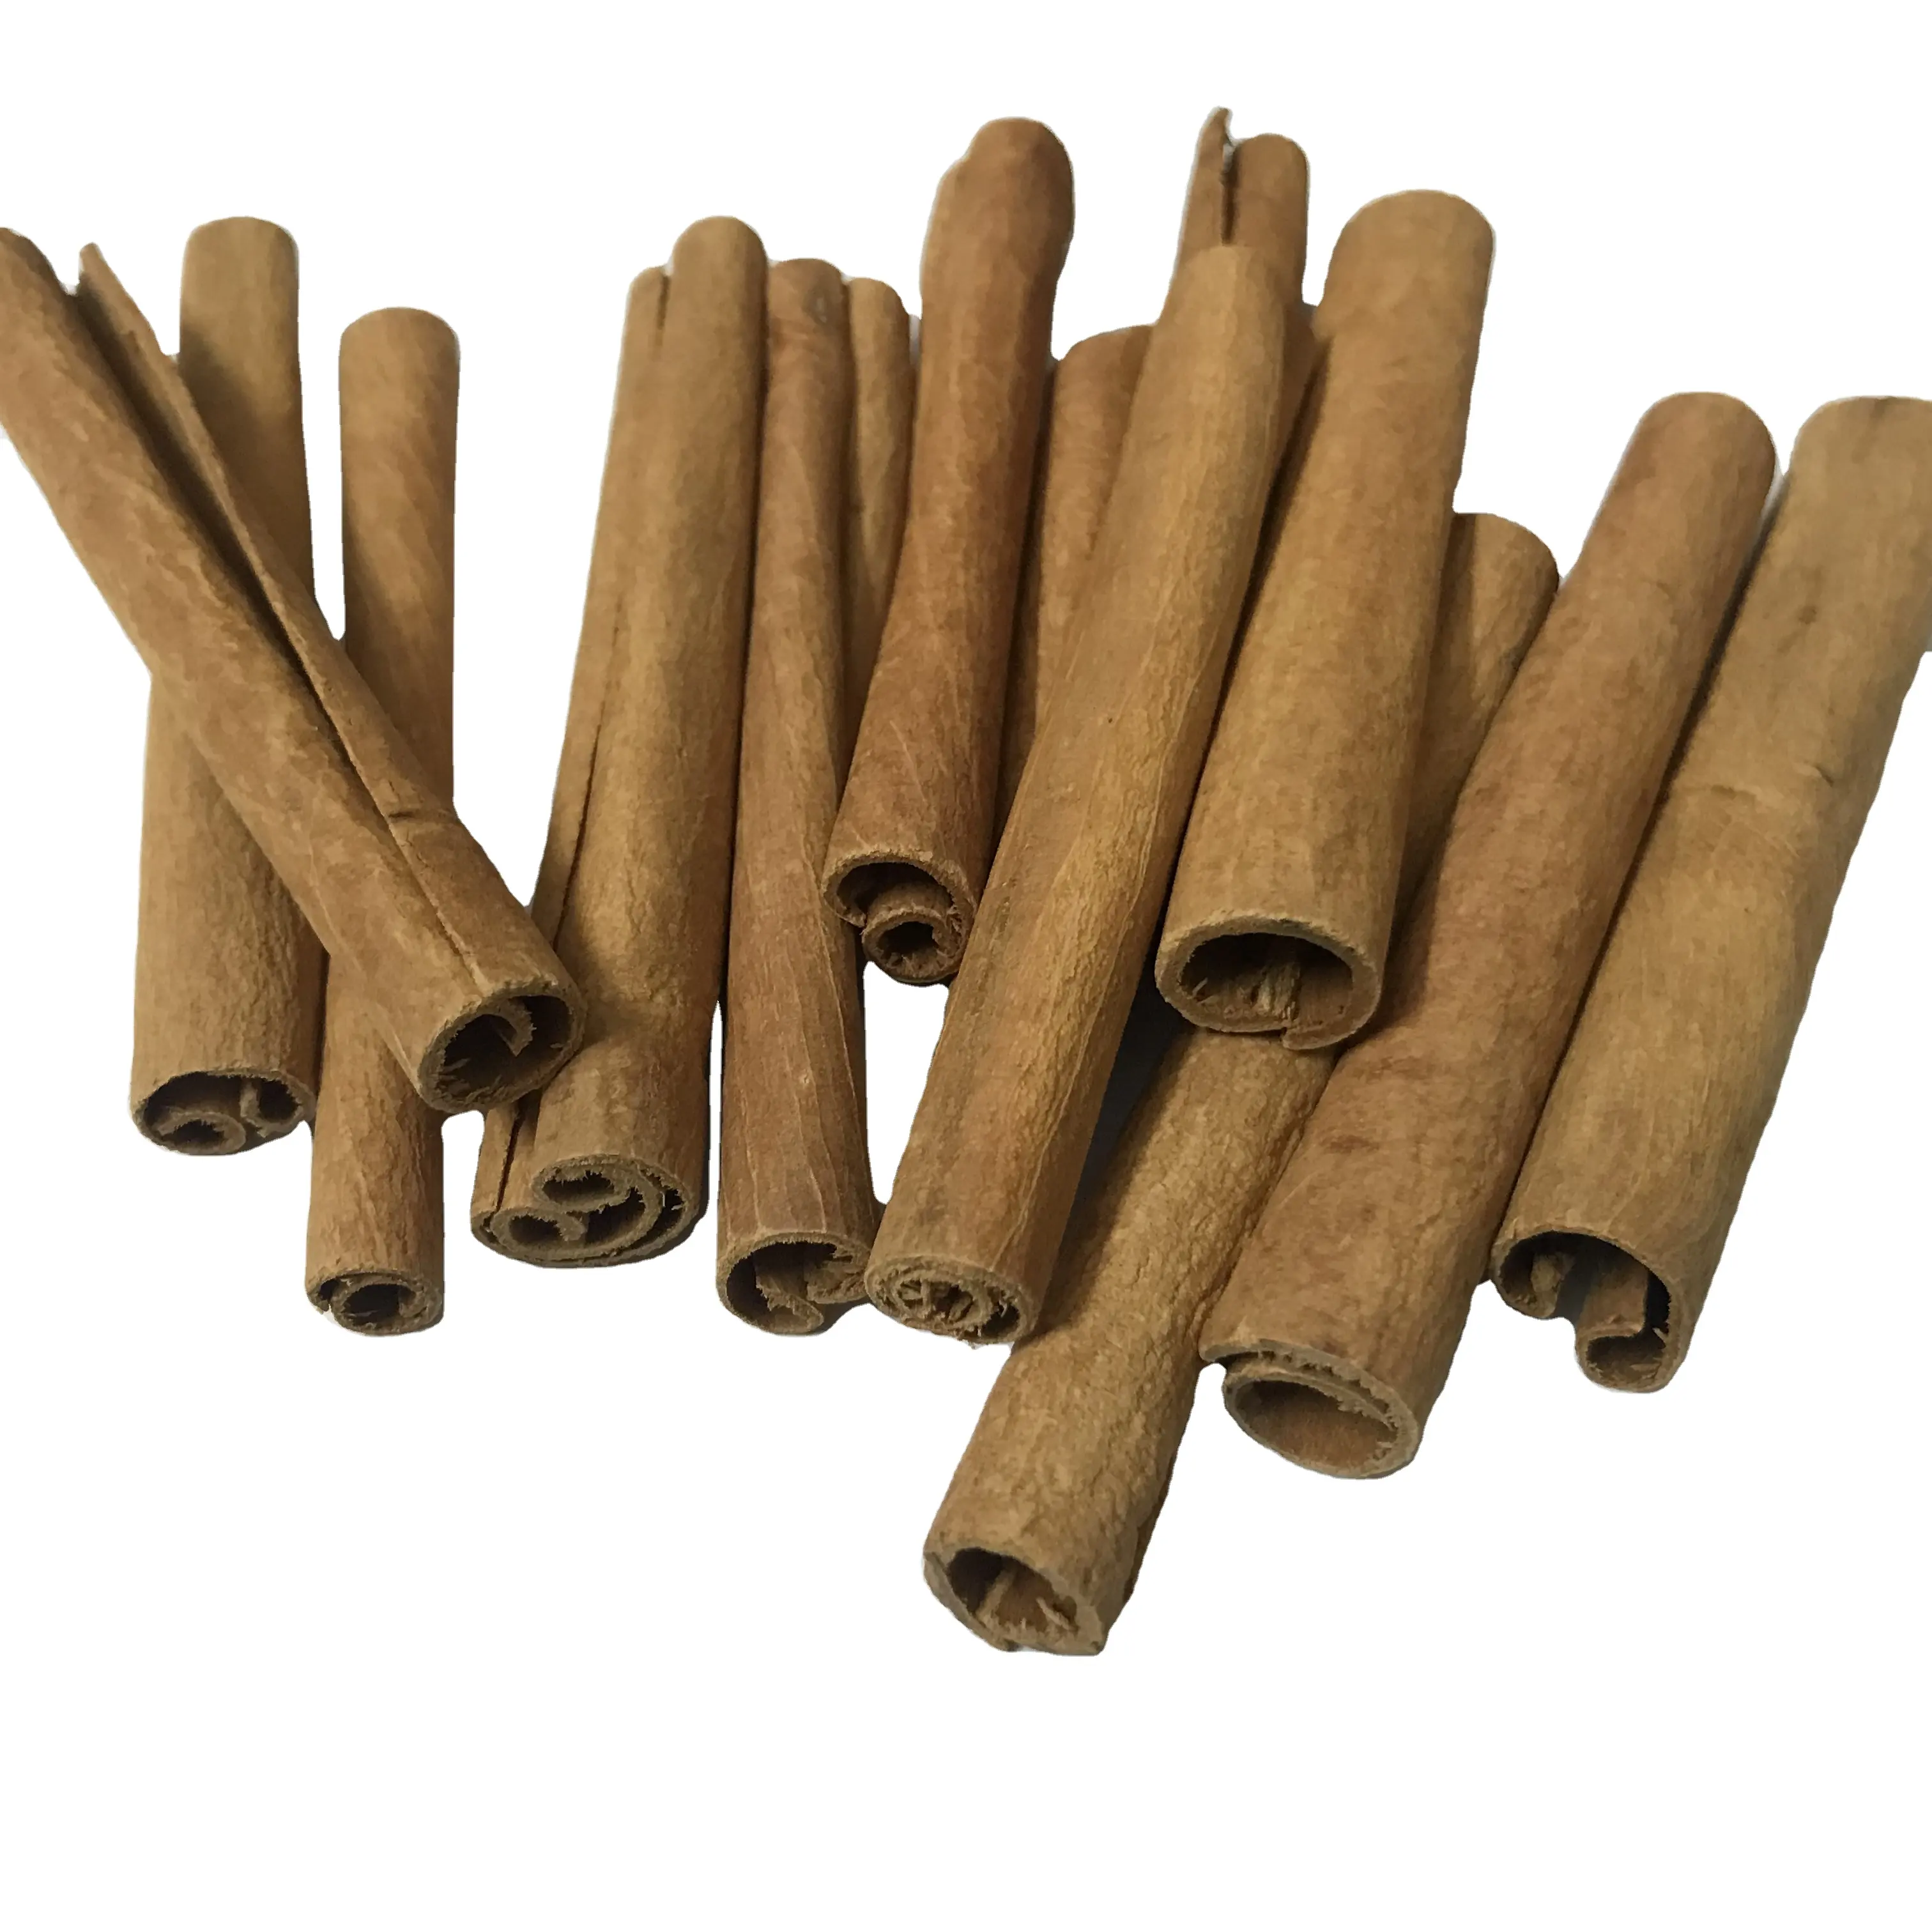 أعشاب القرفة الفيتنامية عالية الجودة, عصا القرفة والبهارات 80% لفة من العلامة التجارية الشهيرة + 84326055616